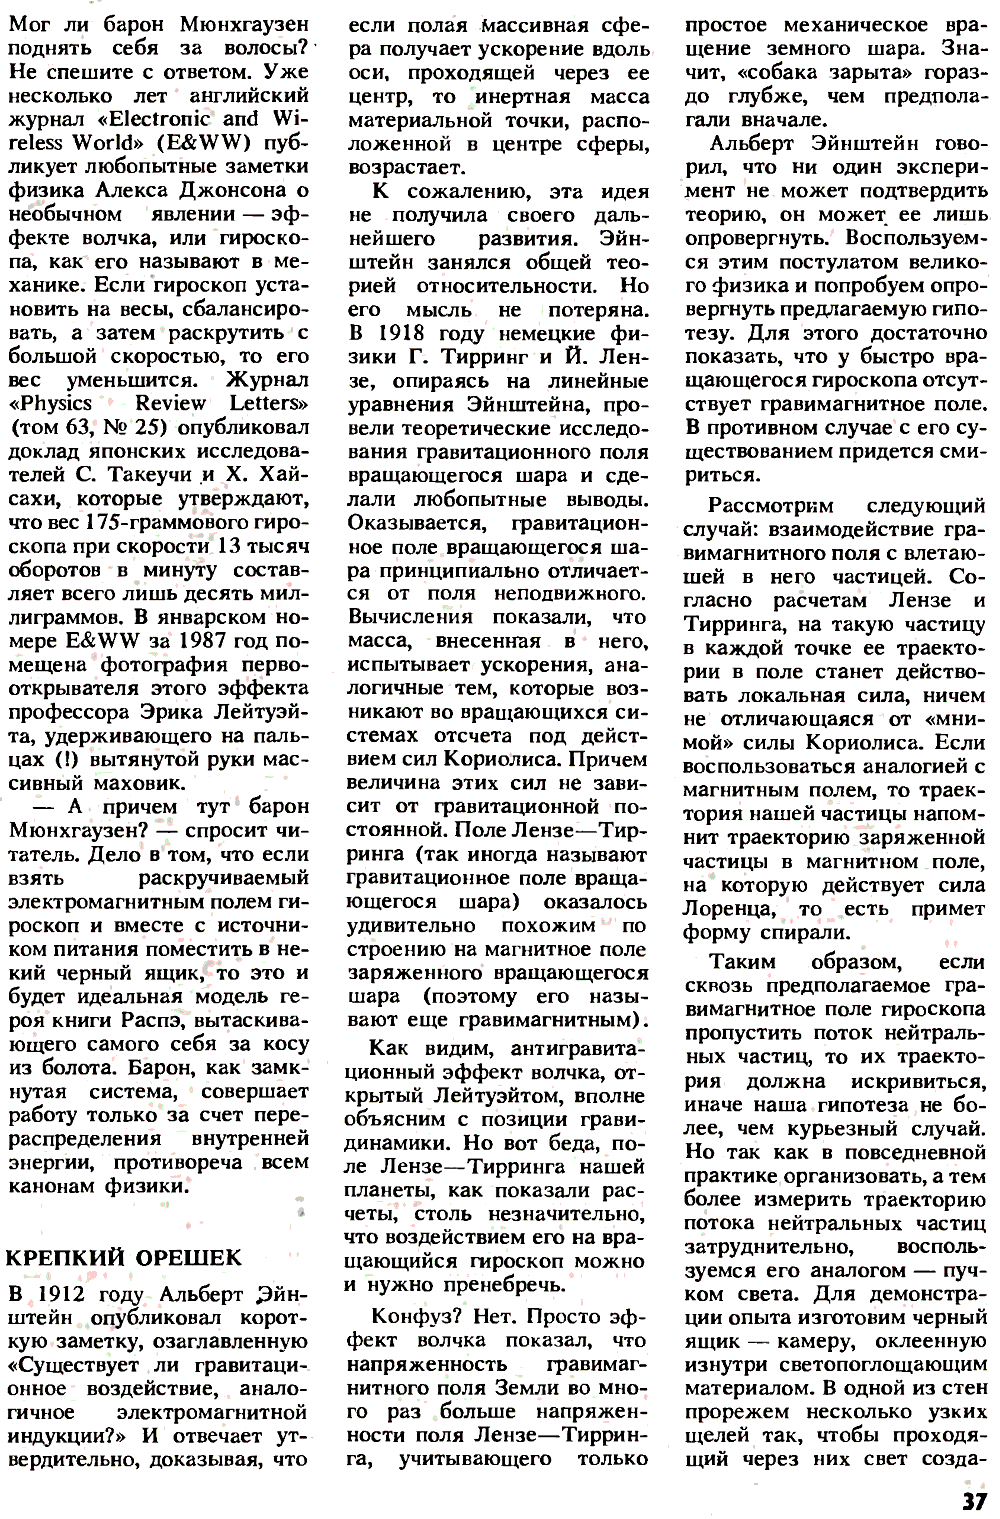 Тайна барона Мюнхгаузена. В.В. Уваров. Химия и жизнь, 1991, №9, с.36-39. Фотокопия №2